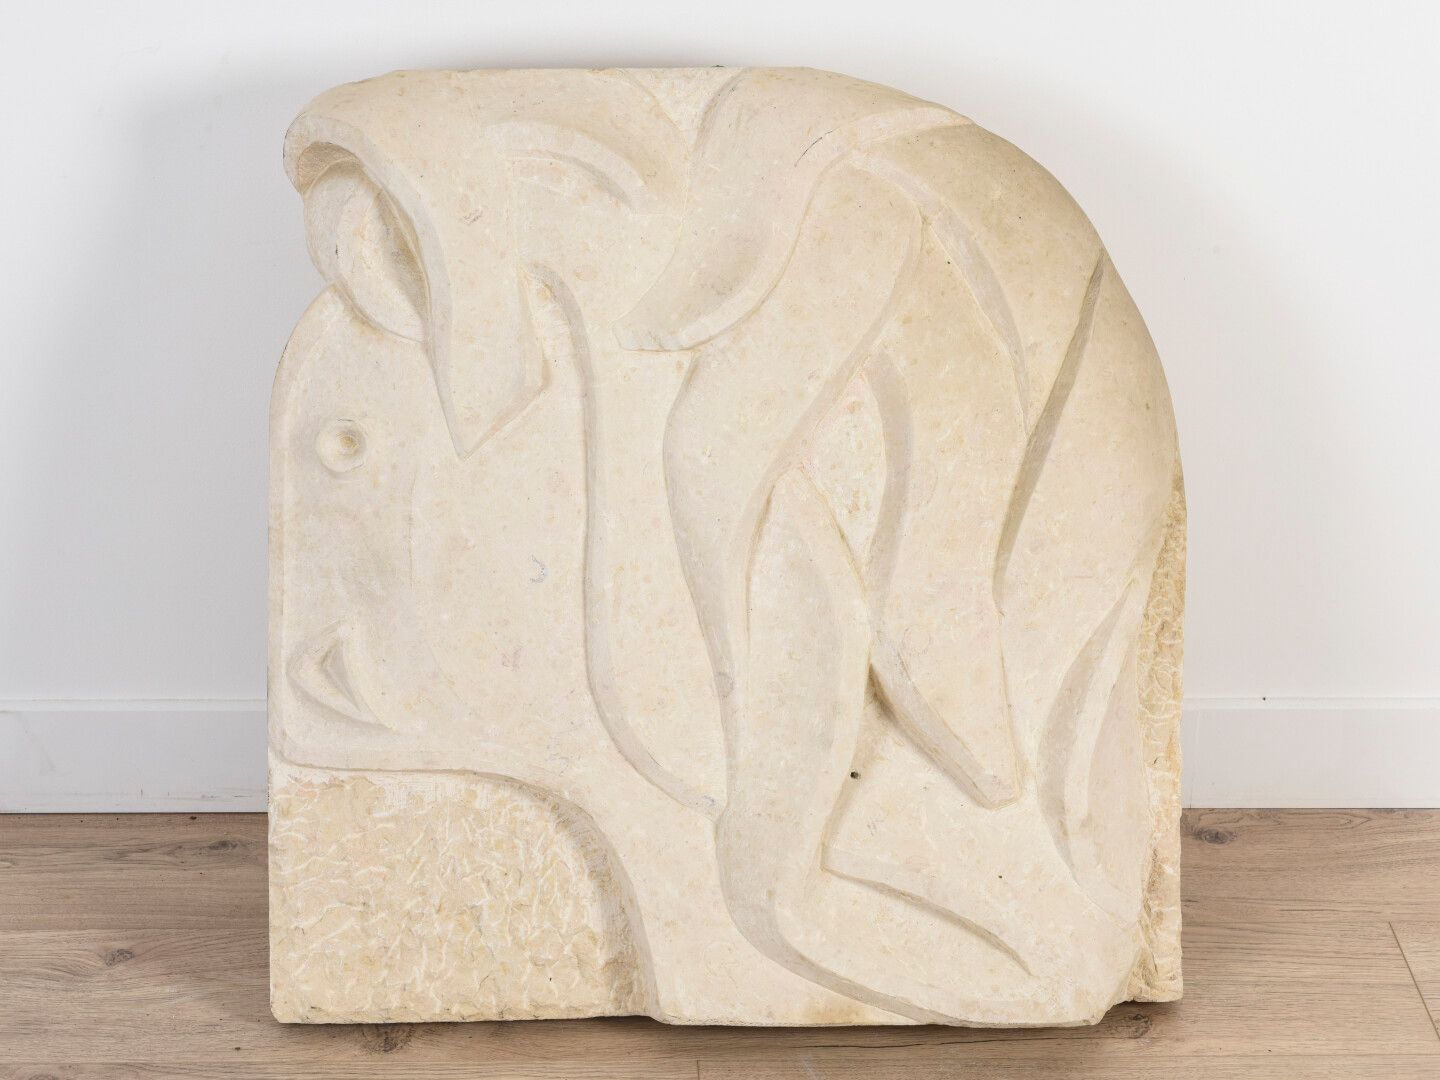 Null 文森特-冈萨雷斯(1928-2019)

石灰石中的主体

72 x 67厘米